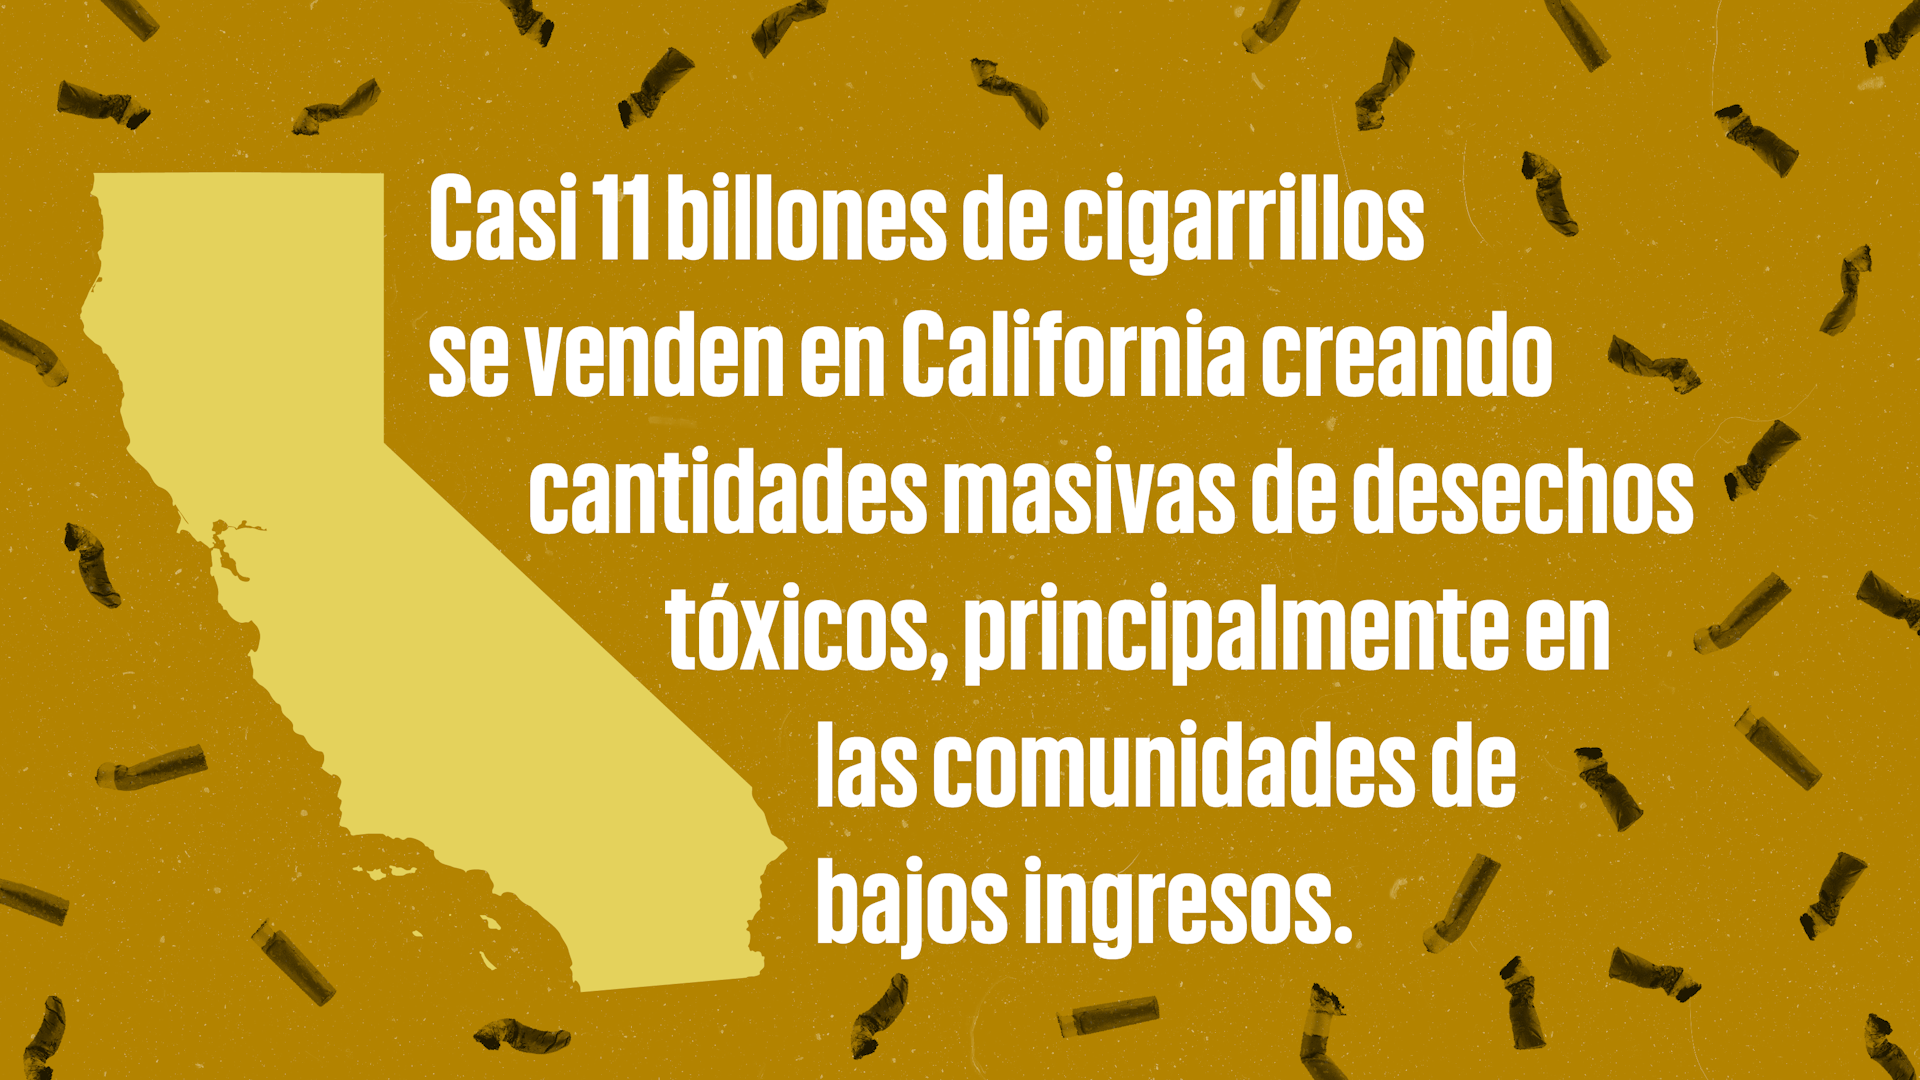 Casi 11 billones de cigarillos se venden en California creando cantidades masivas de desechos tóxicos, principalmente en las comunidades de bajos ingresos.